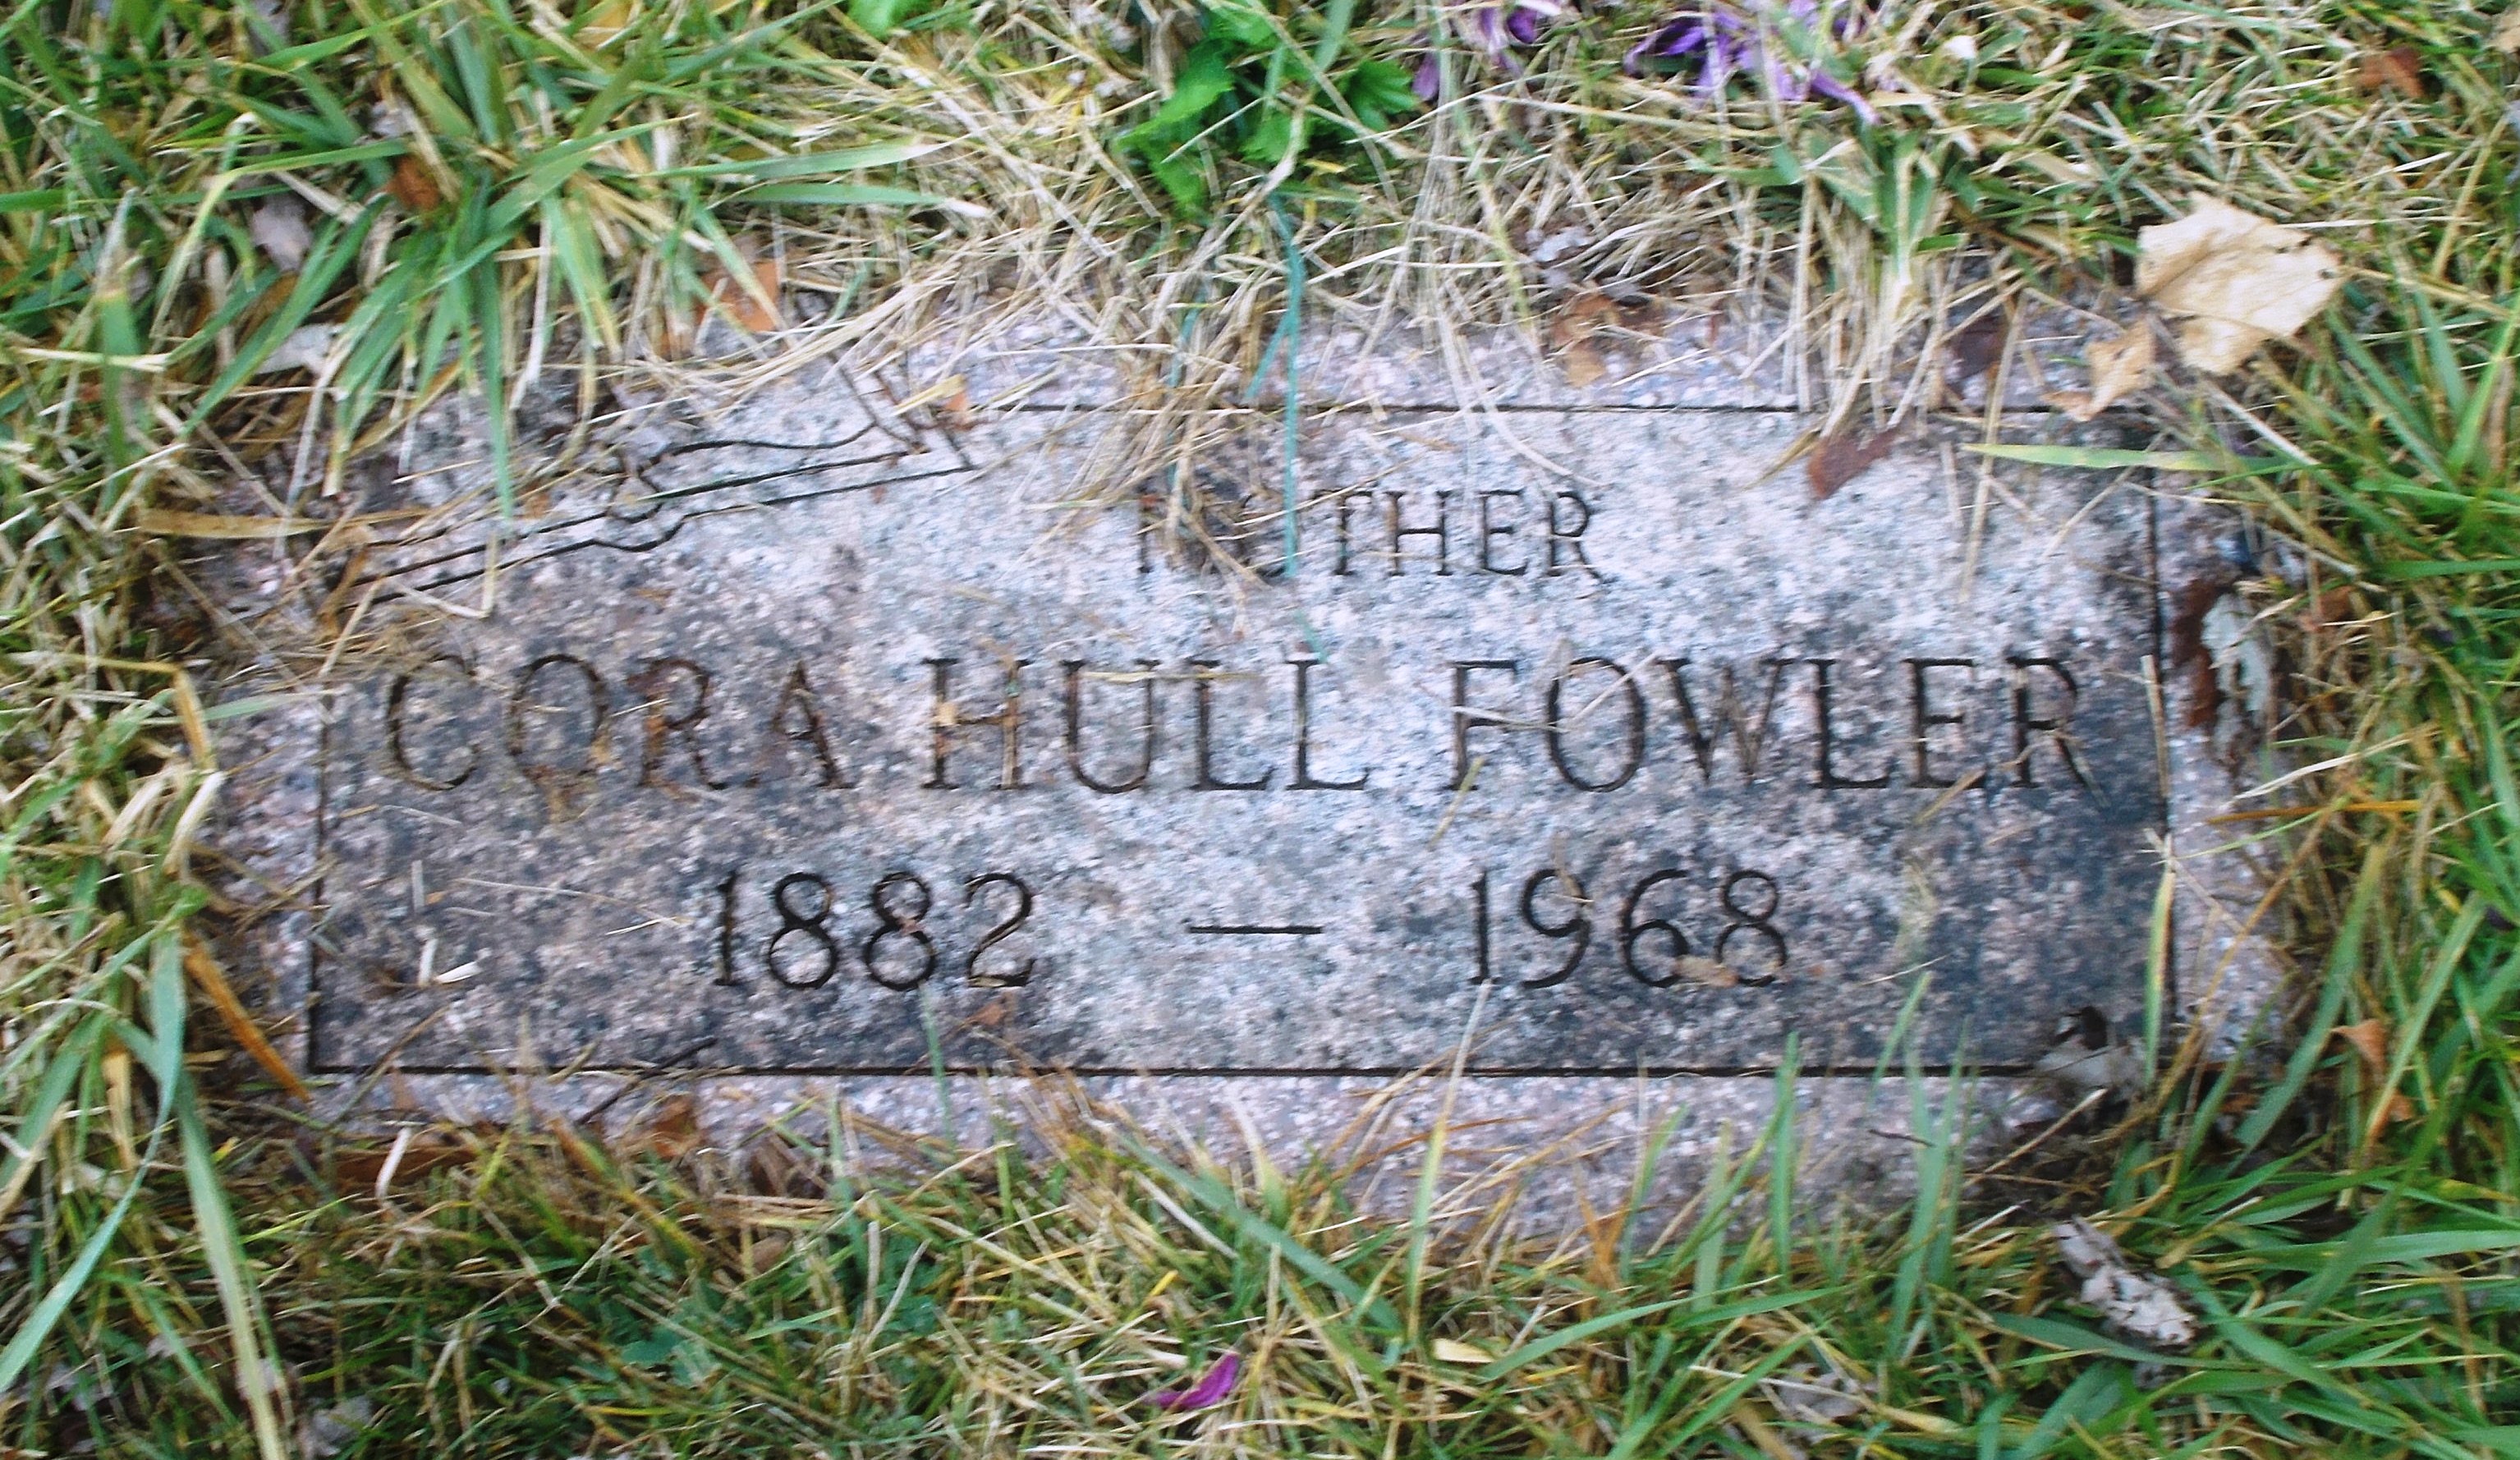 Cora Hull Fowler